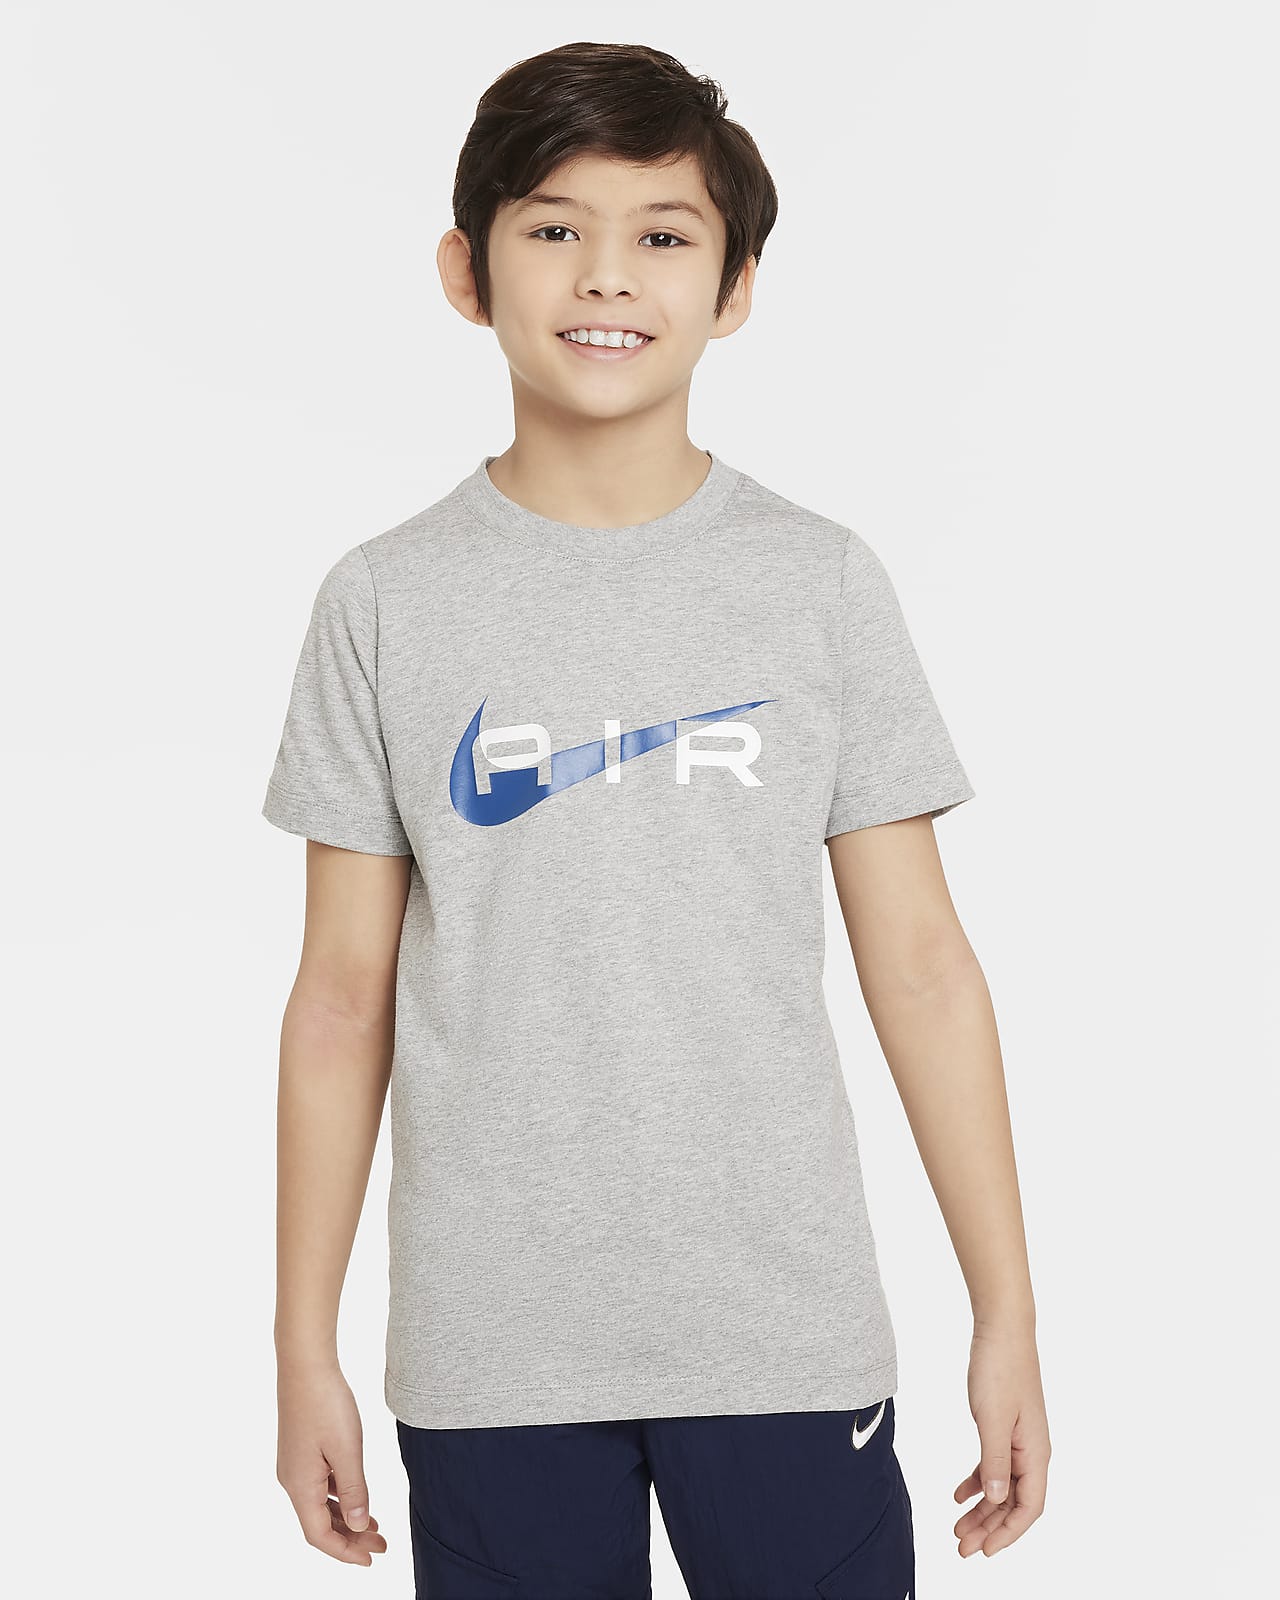 T-Shirt Nike Air για μεγάλα αγόρια